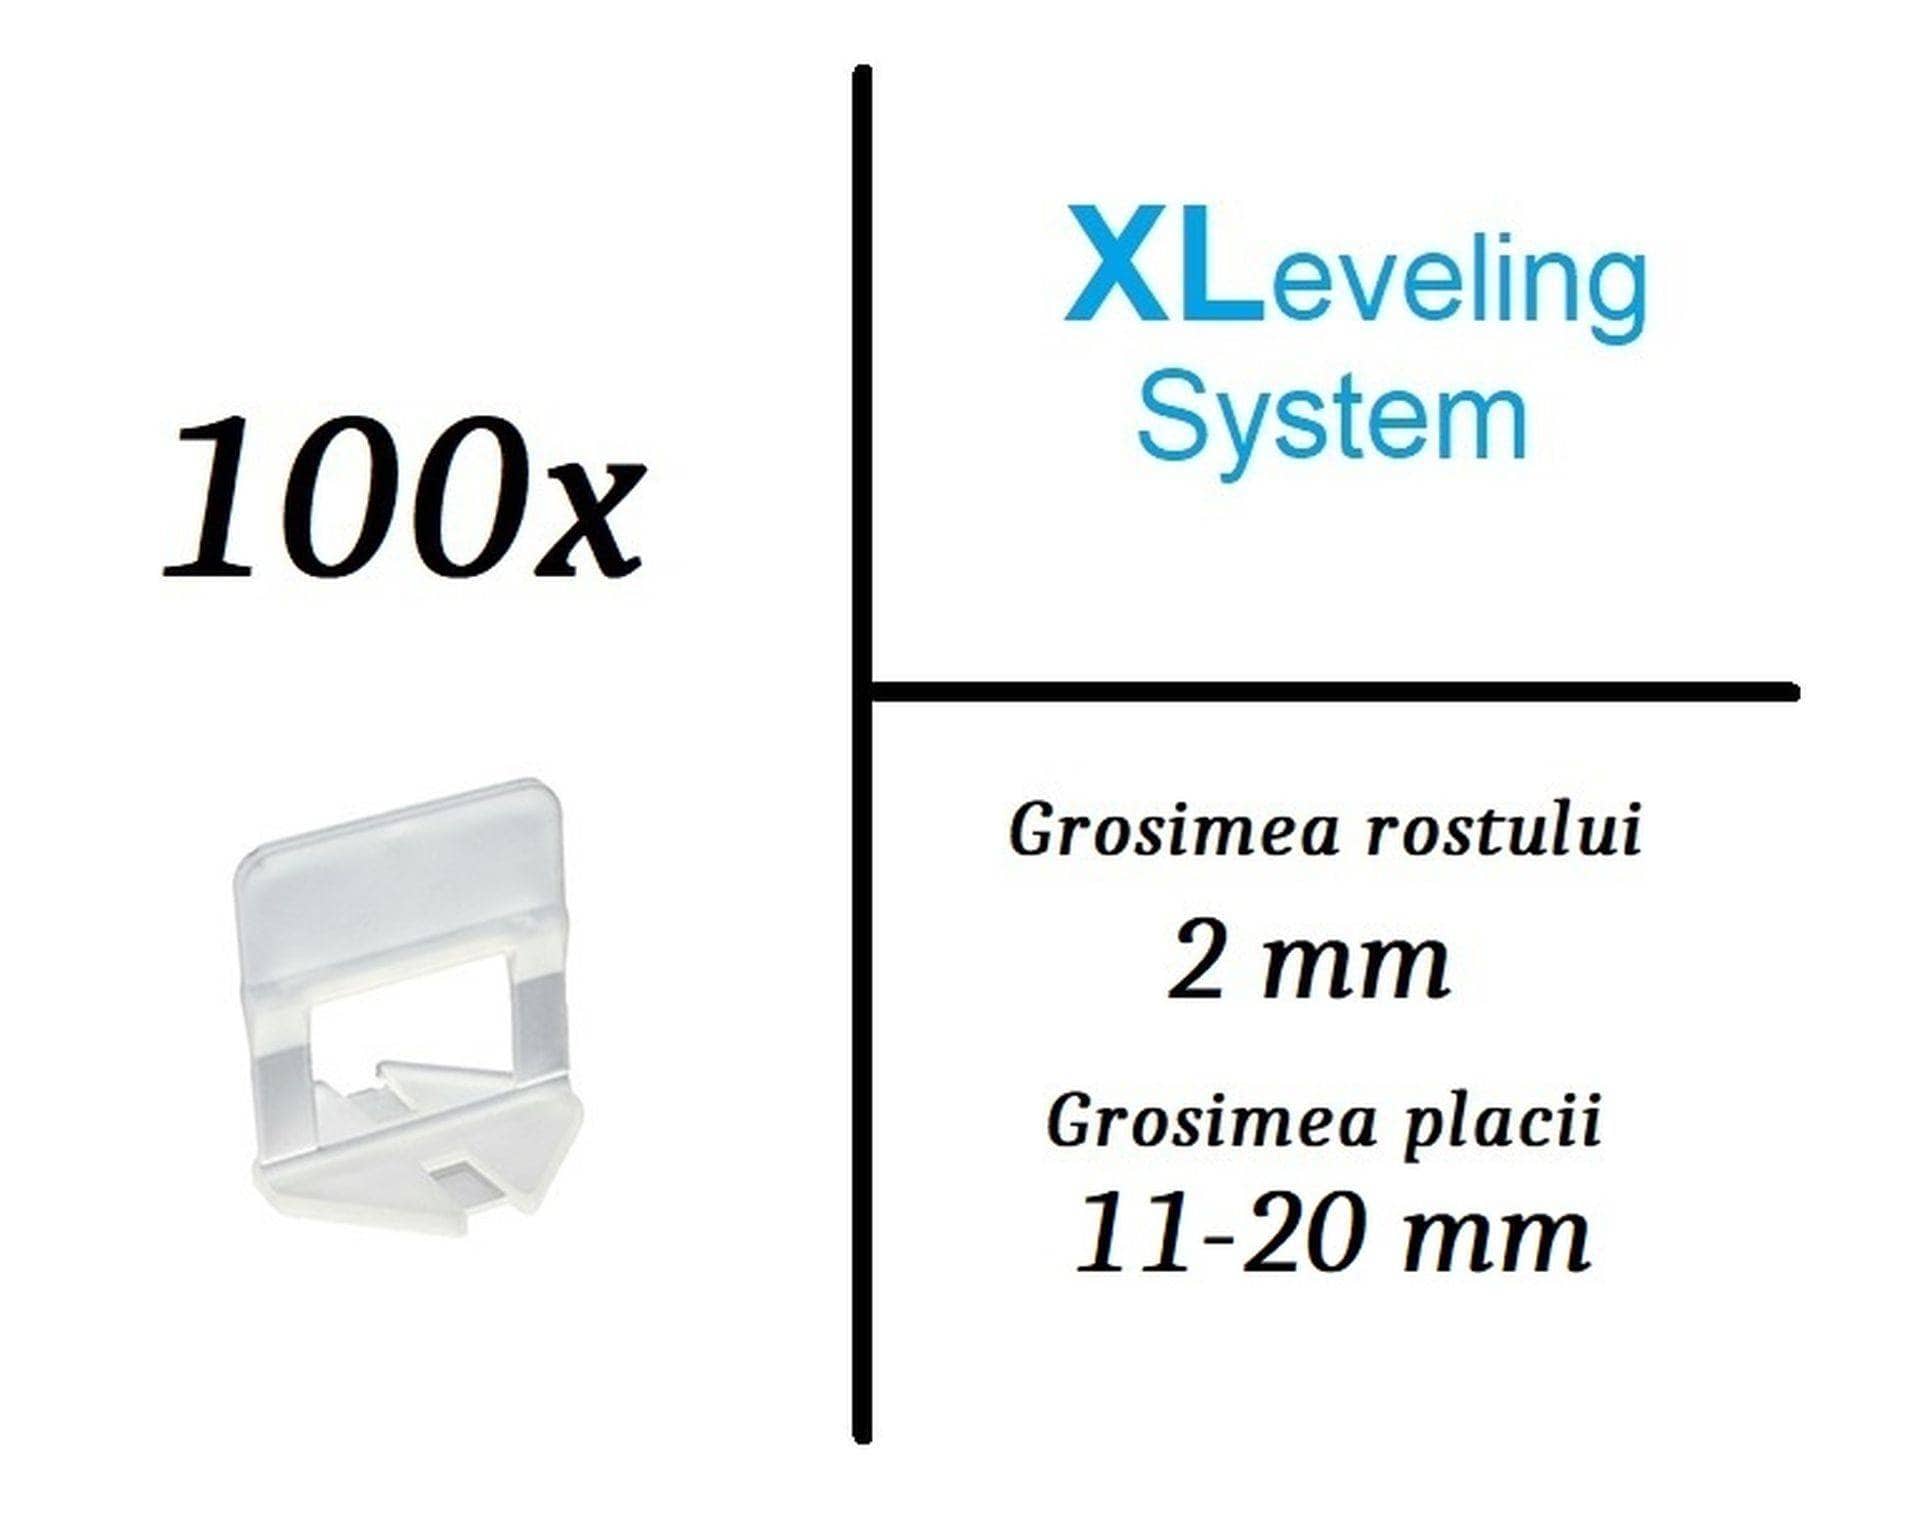 Suport, clips nivelare XLeveling 2mm placi groase - 100 buc